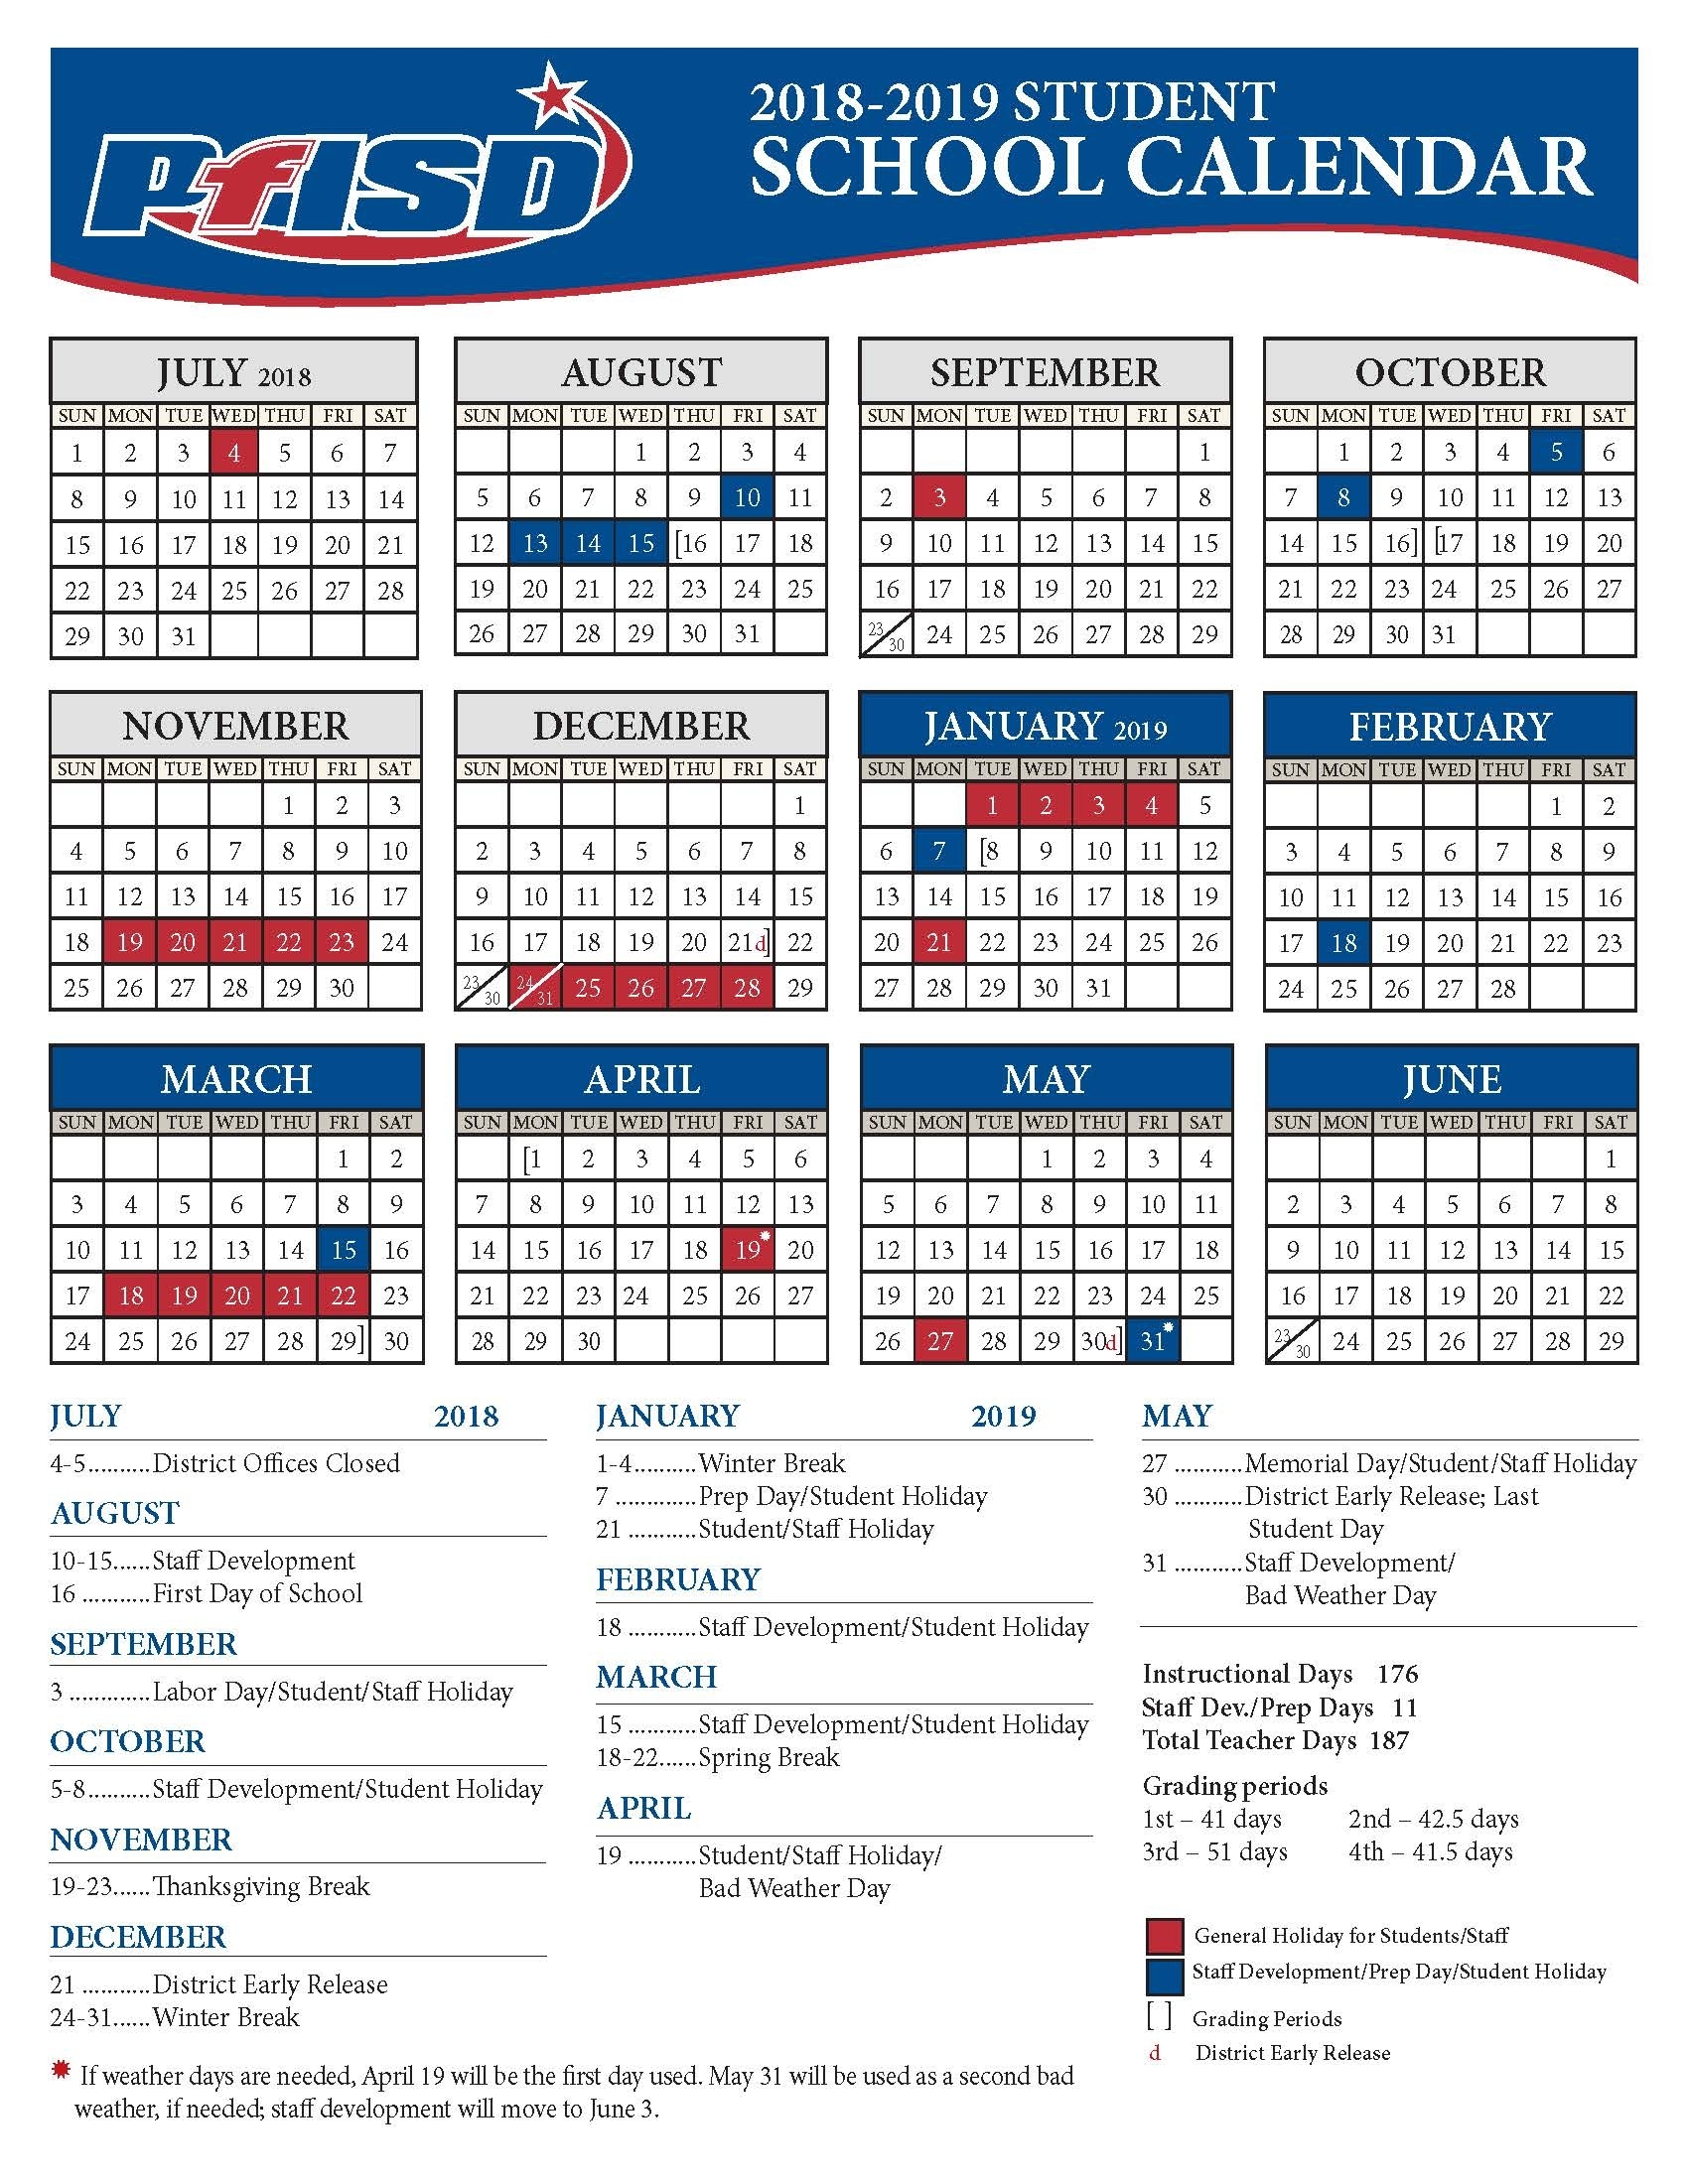 School Year Calendar / 2018-2019 District Calendar Impressive D.c. Public Schools Calendar